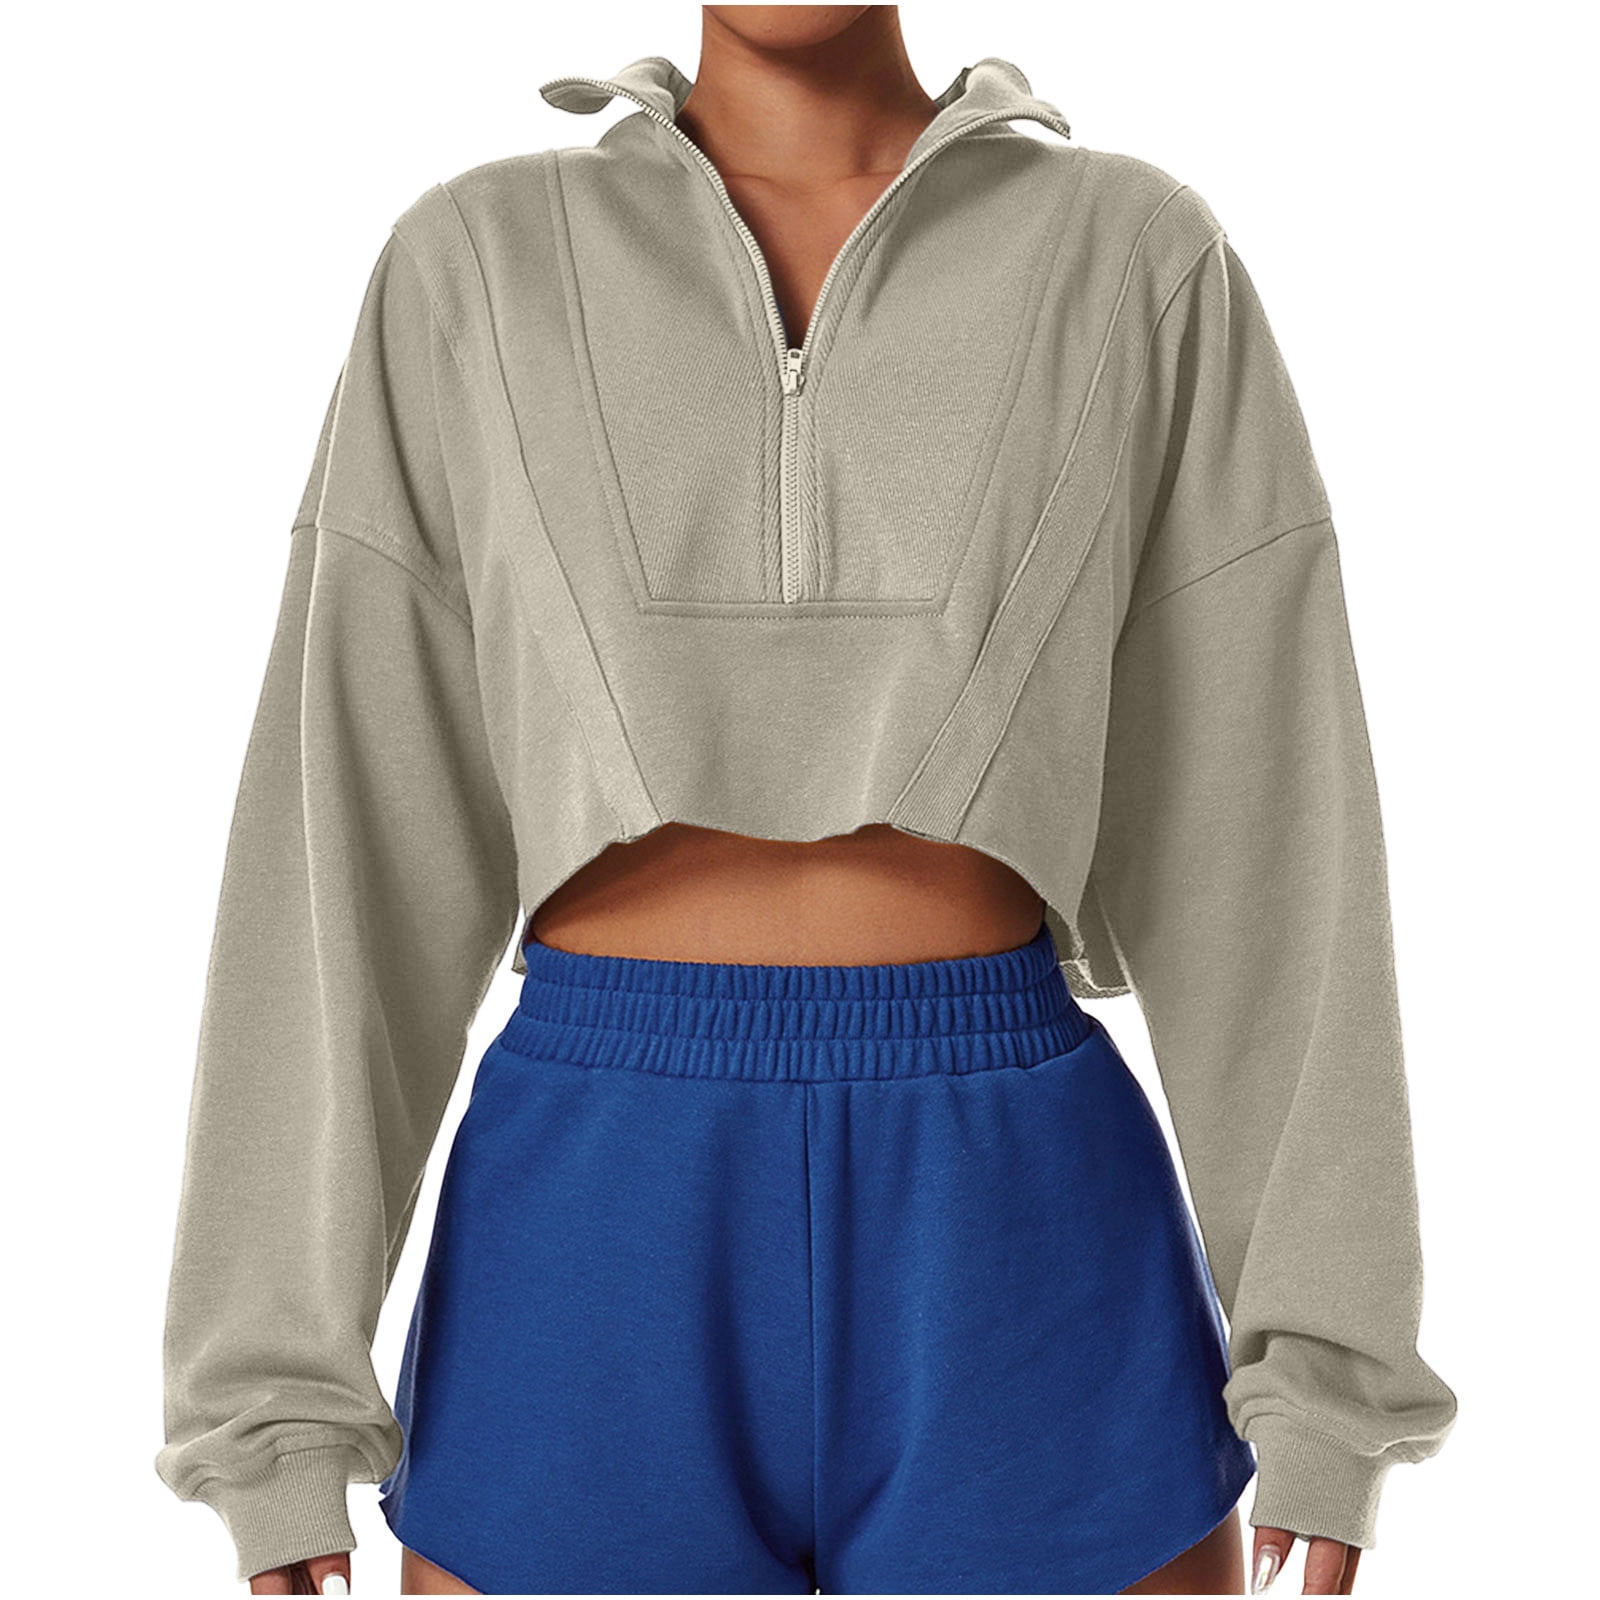 Nike Women's Hoodies & Sweatshirts for sale in Little Rock, Arkansas, Facebook Marketplace